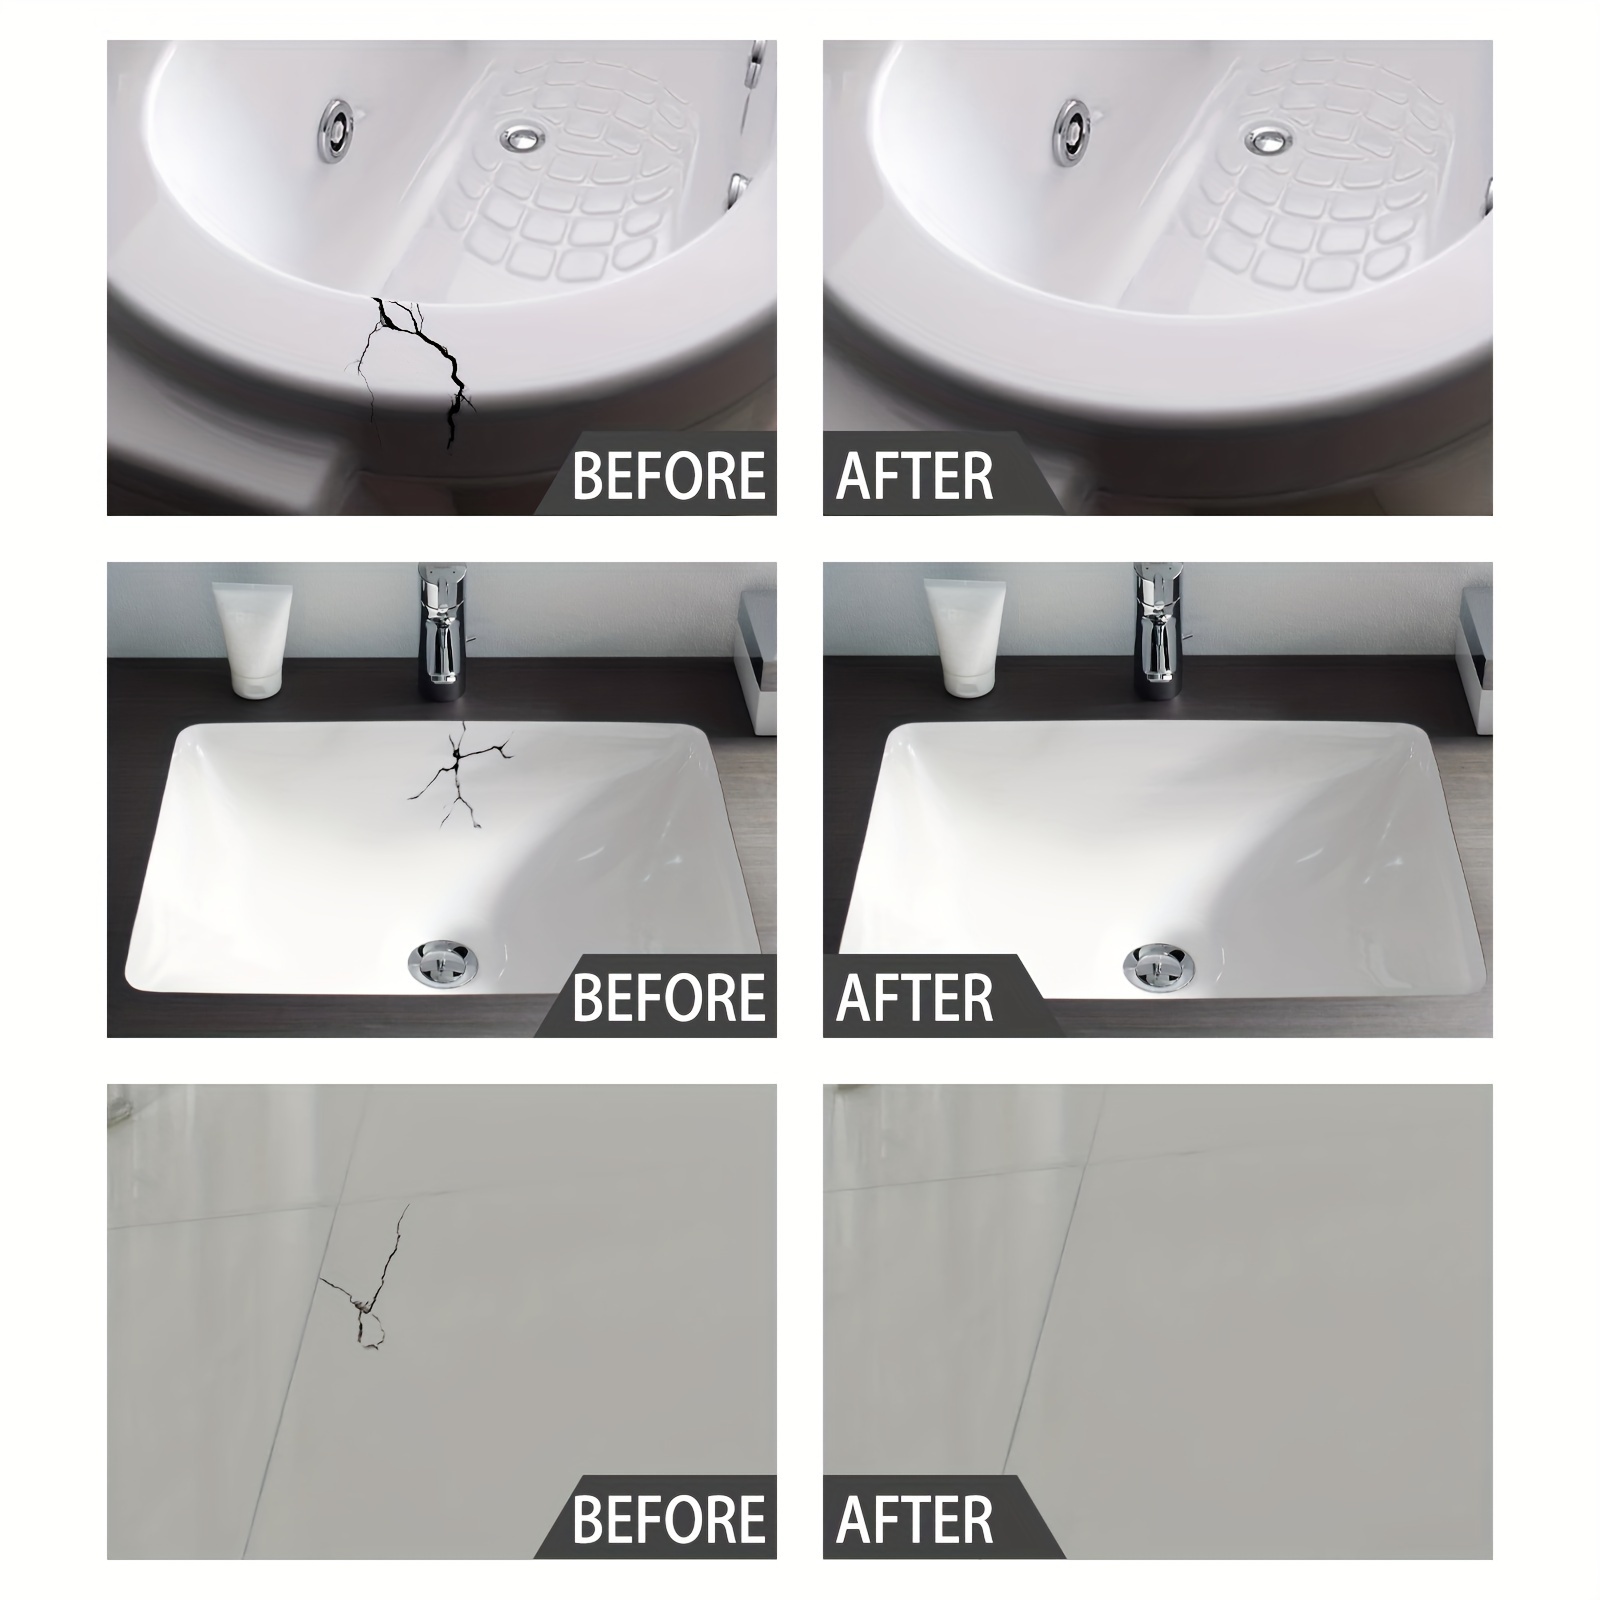 Ceramic Repair Agent Household Ceramic Restoration Glue Seamless Cracks